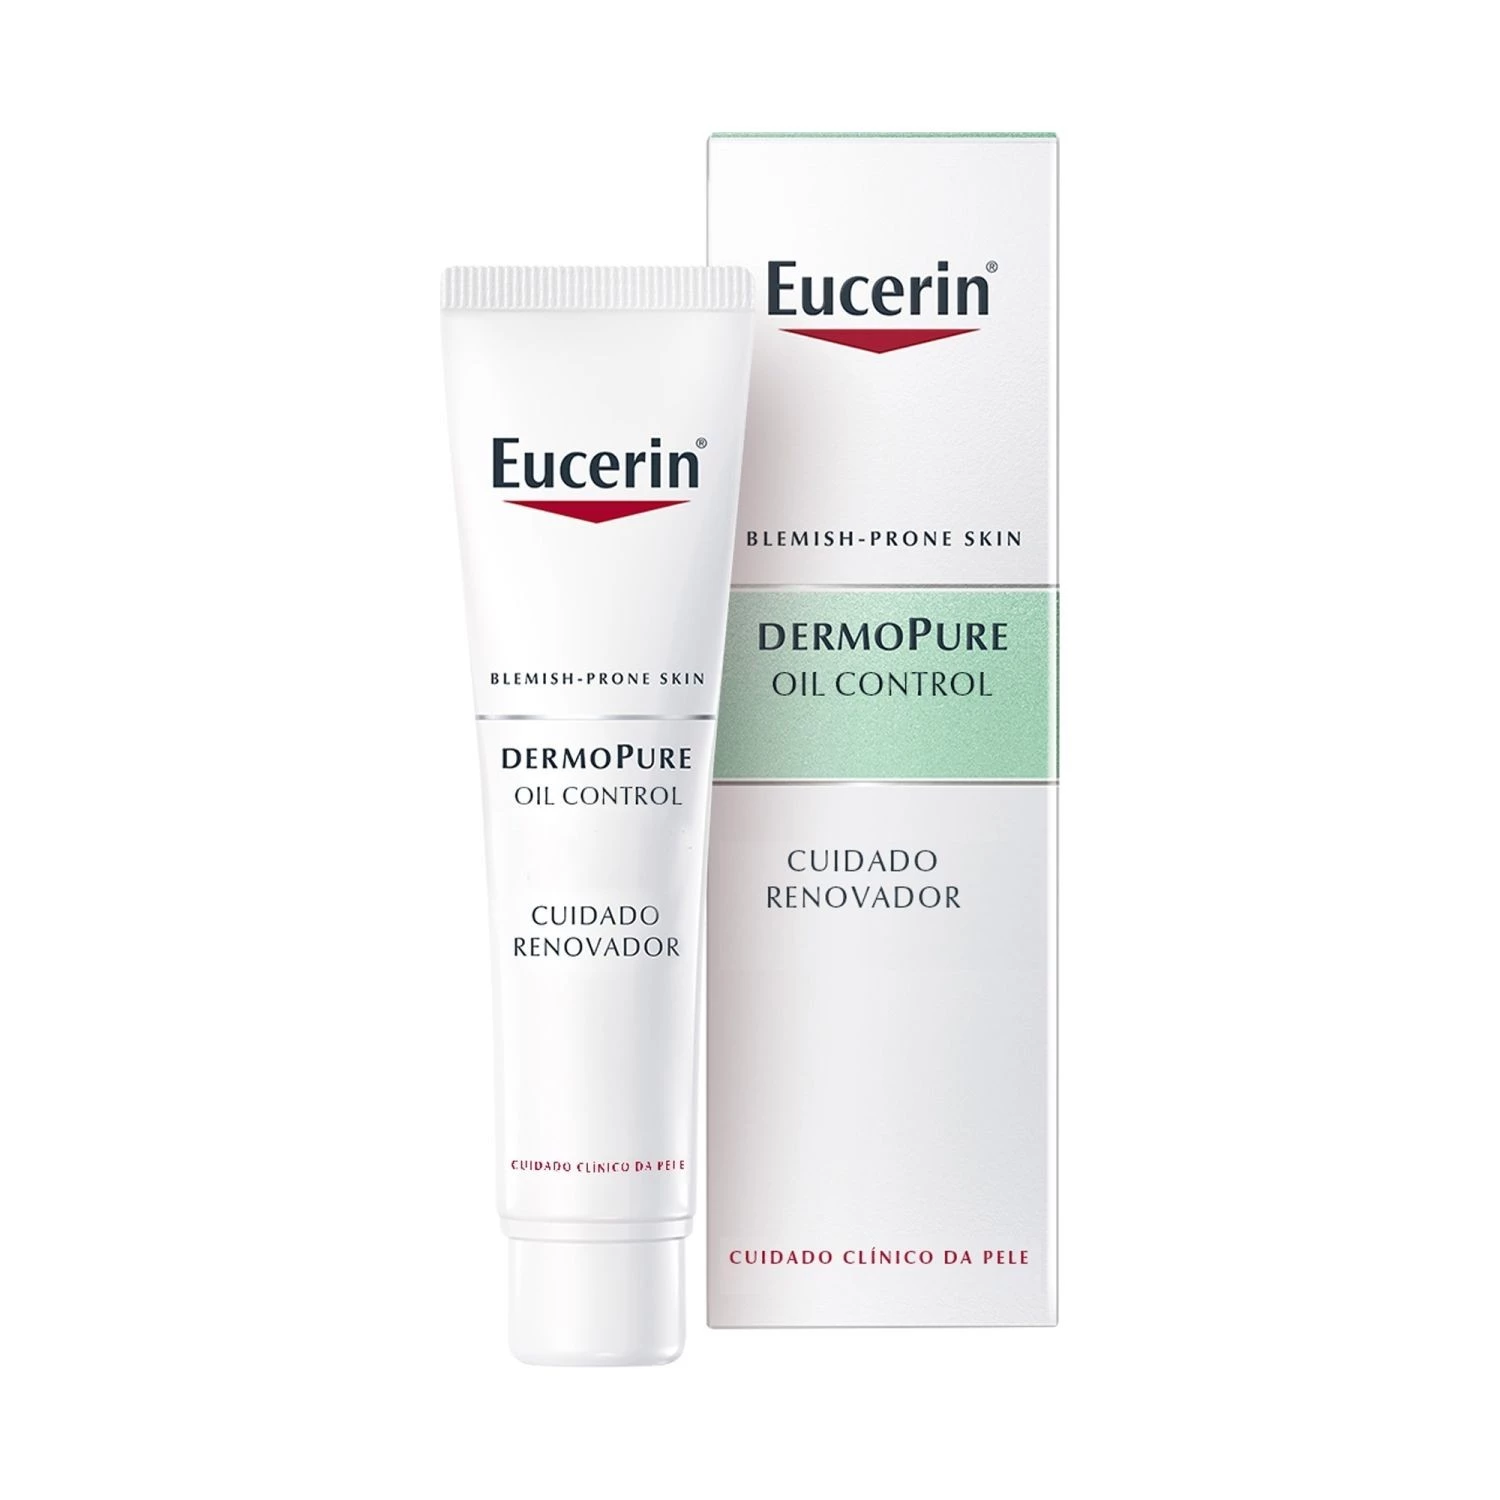 Eucerin DermoPure Oil Control Tratamiento 10% hidroxiácidos, 40ml.